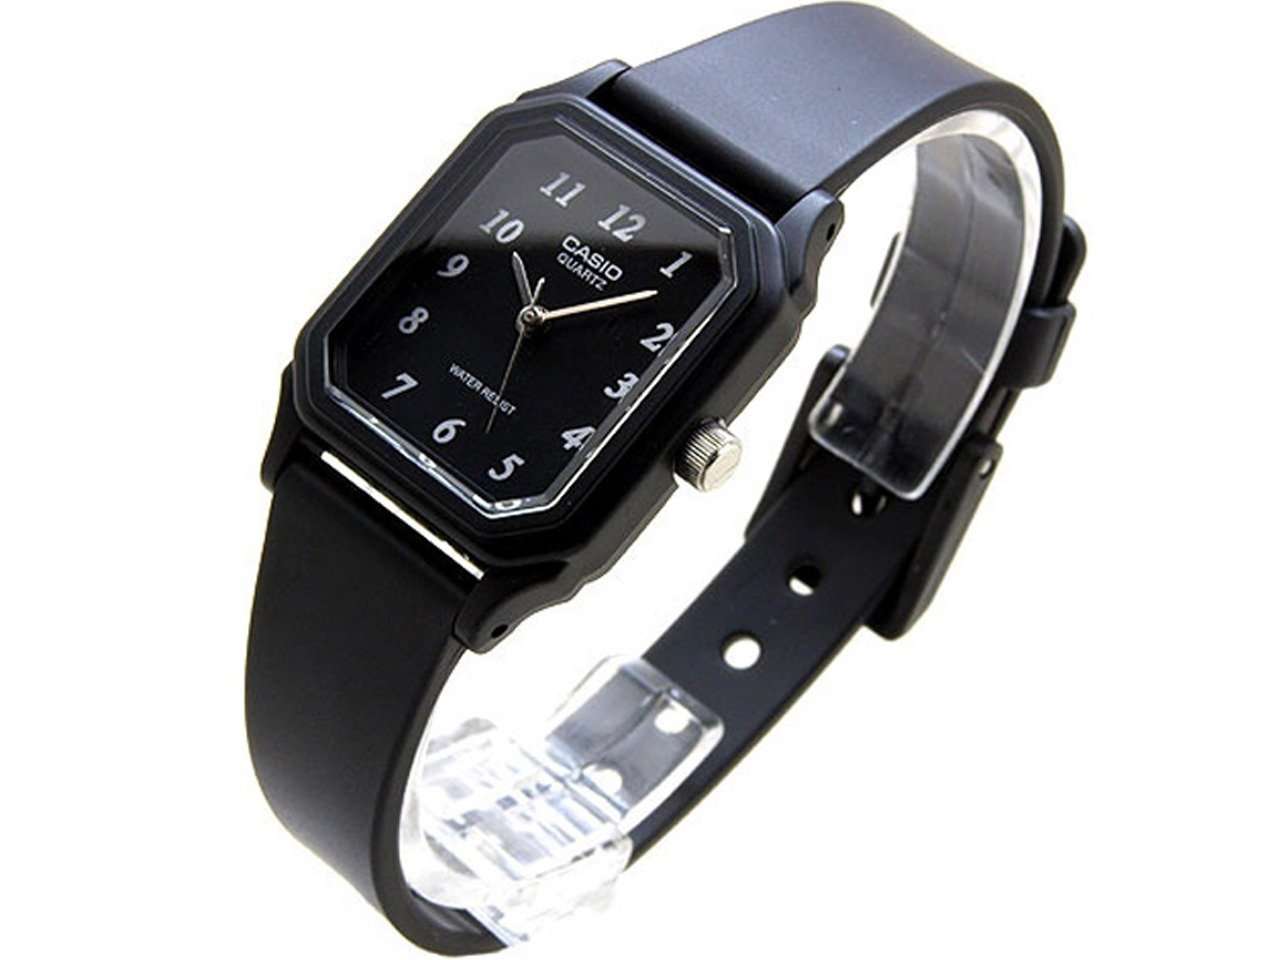 Casio LQ-142-1BDF Black Rubber Strap Watch for Women-Watch Portal Philippines